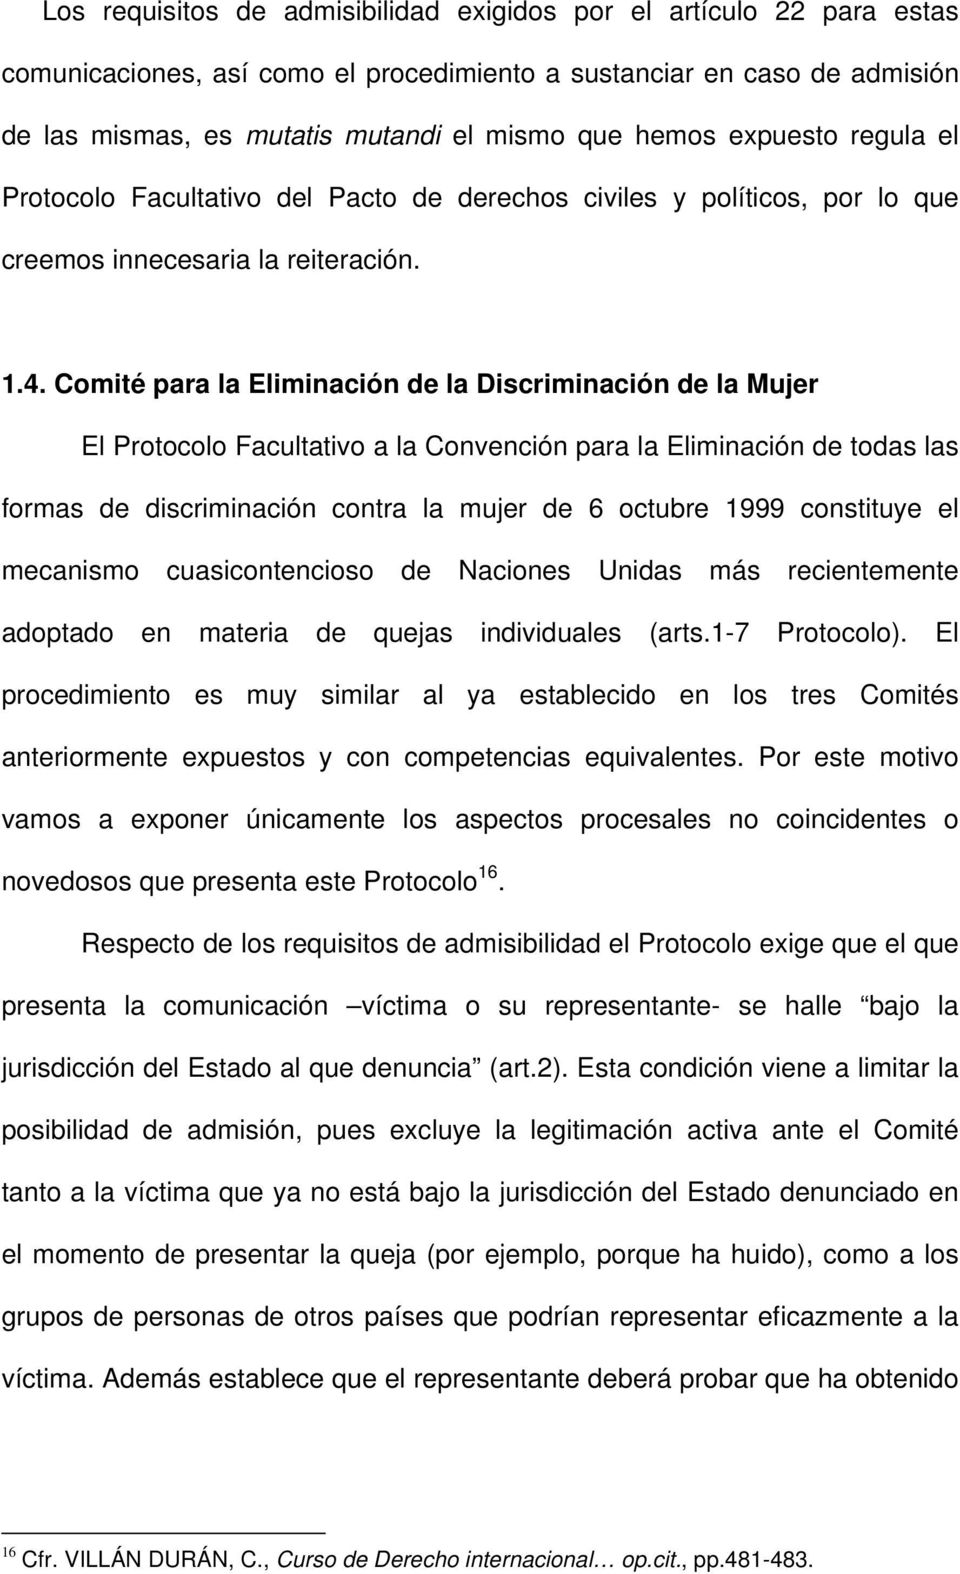 Comité para la Eliminación de la Discriminación de la Mujer El Protocolo Facultativo a la Convención para la Eliminación de todas las formas de discriminación contra la mujer de 6 octubre 1999